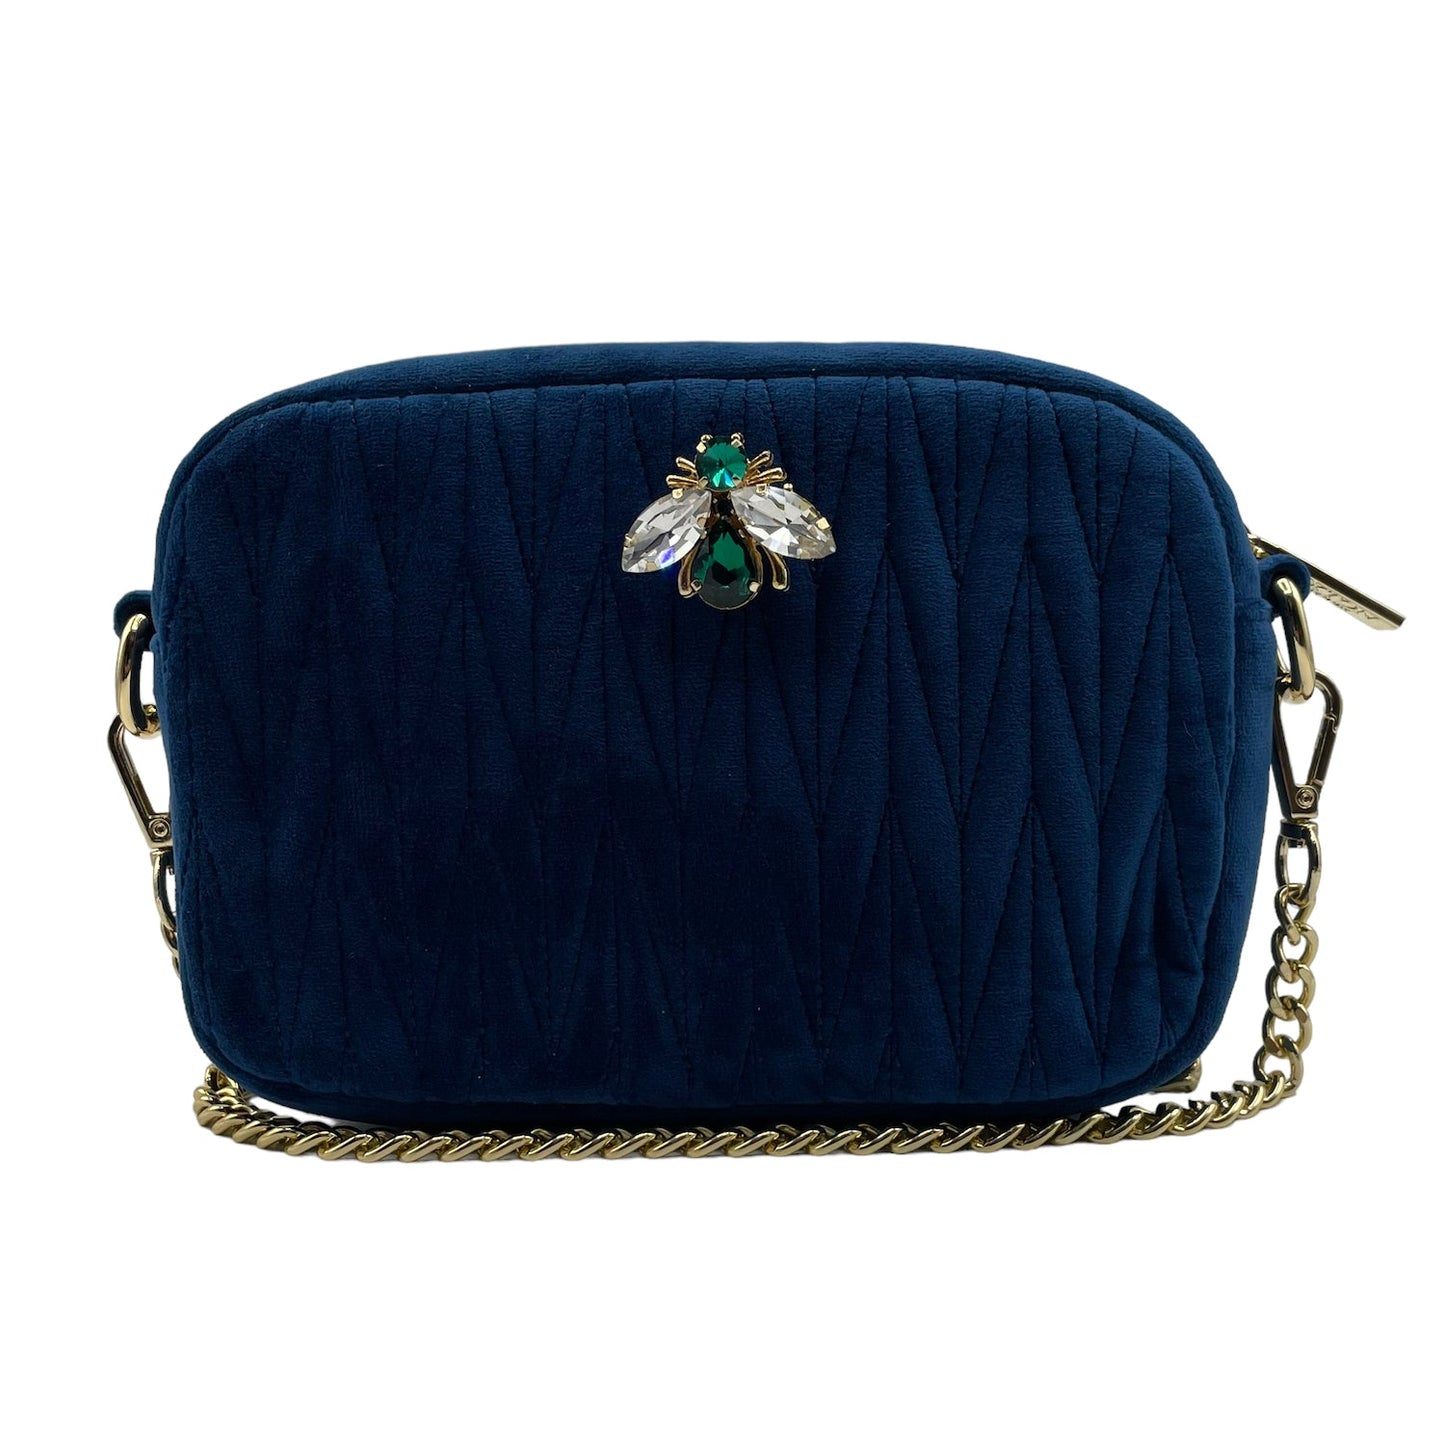 Velvet Rivington Handbag in Blue with luna bee pin - recycled velvet